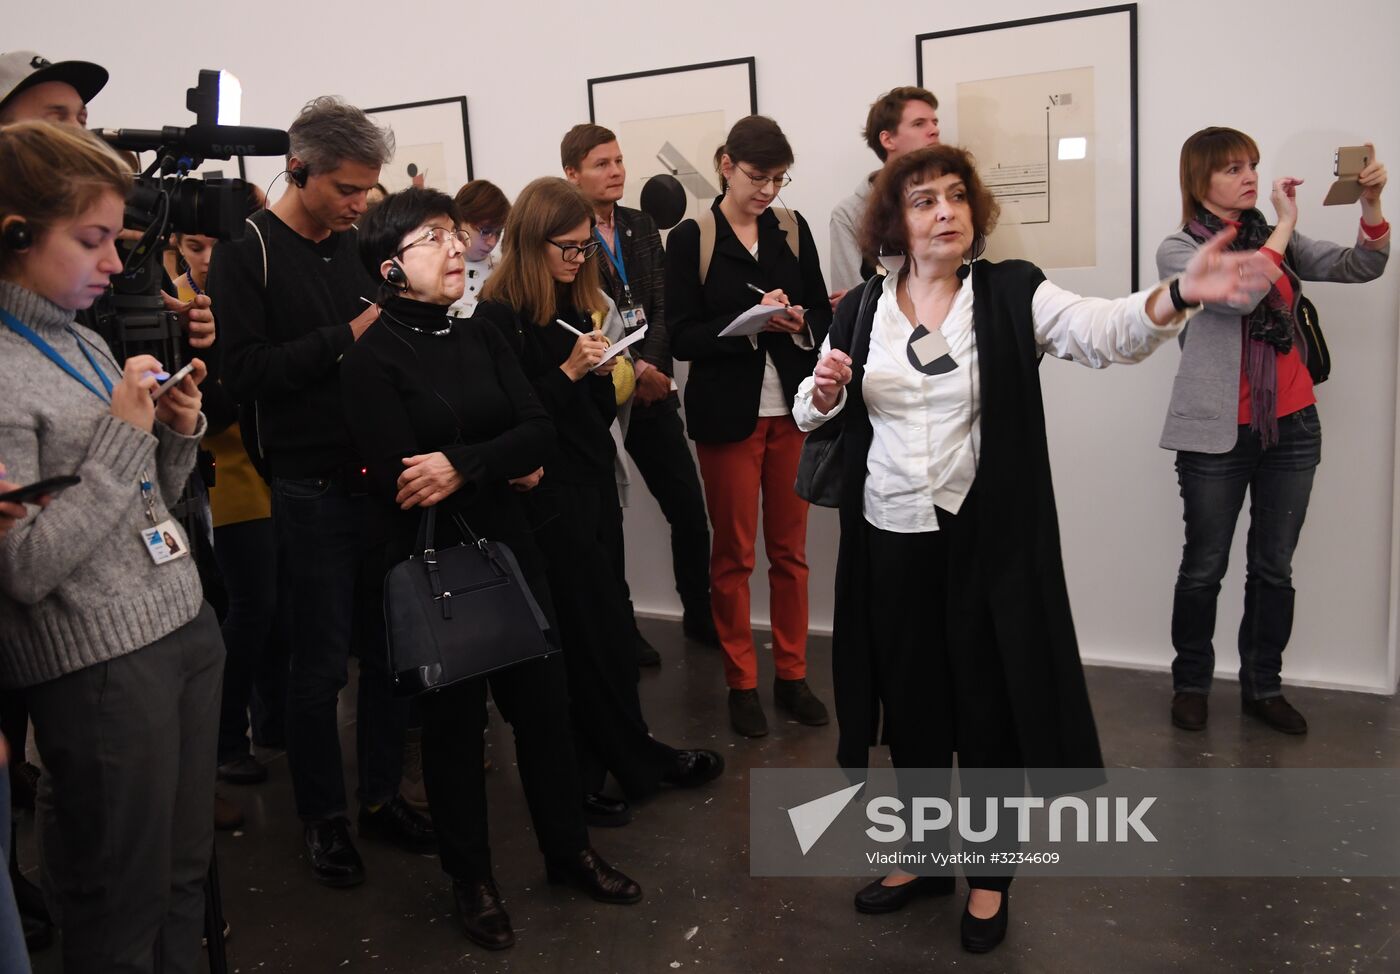 El Lissitzky exhibition